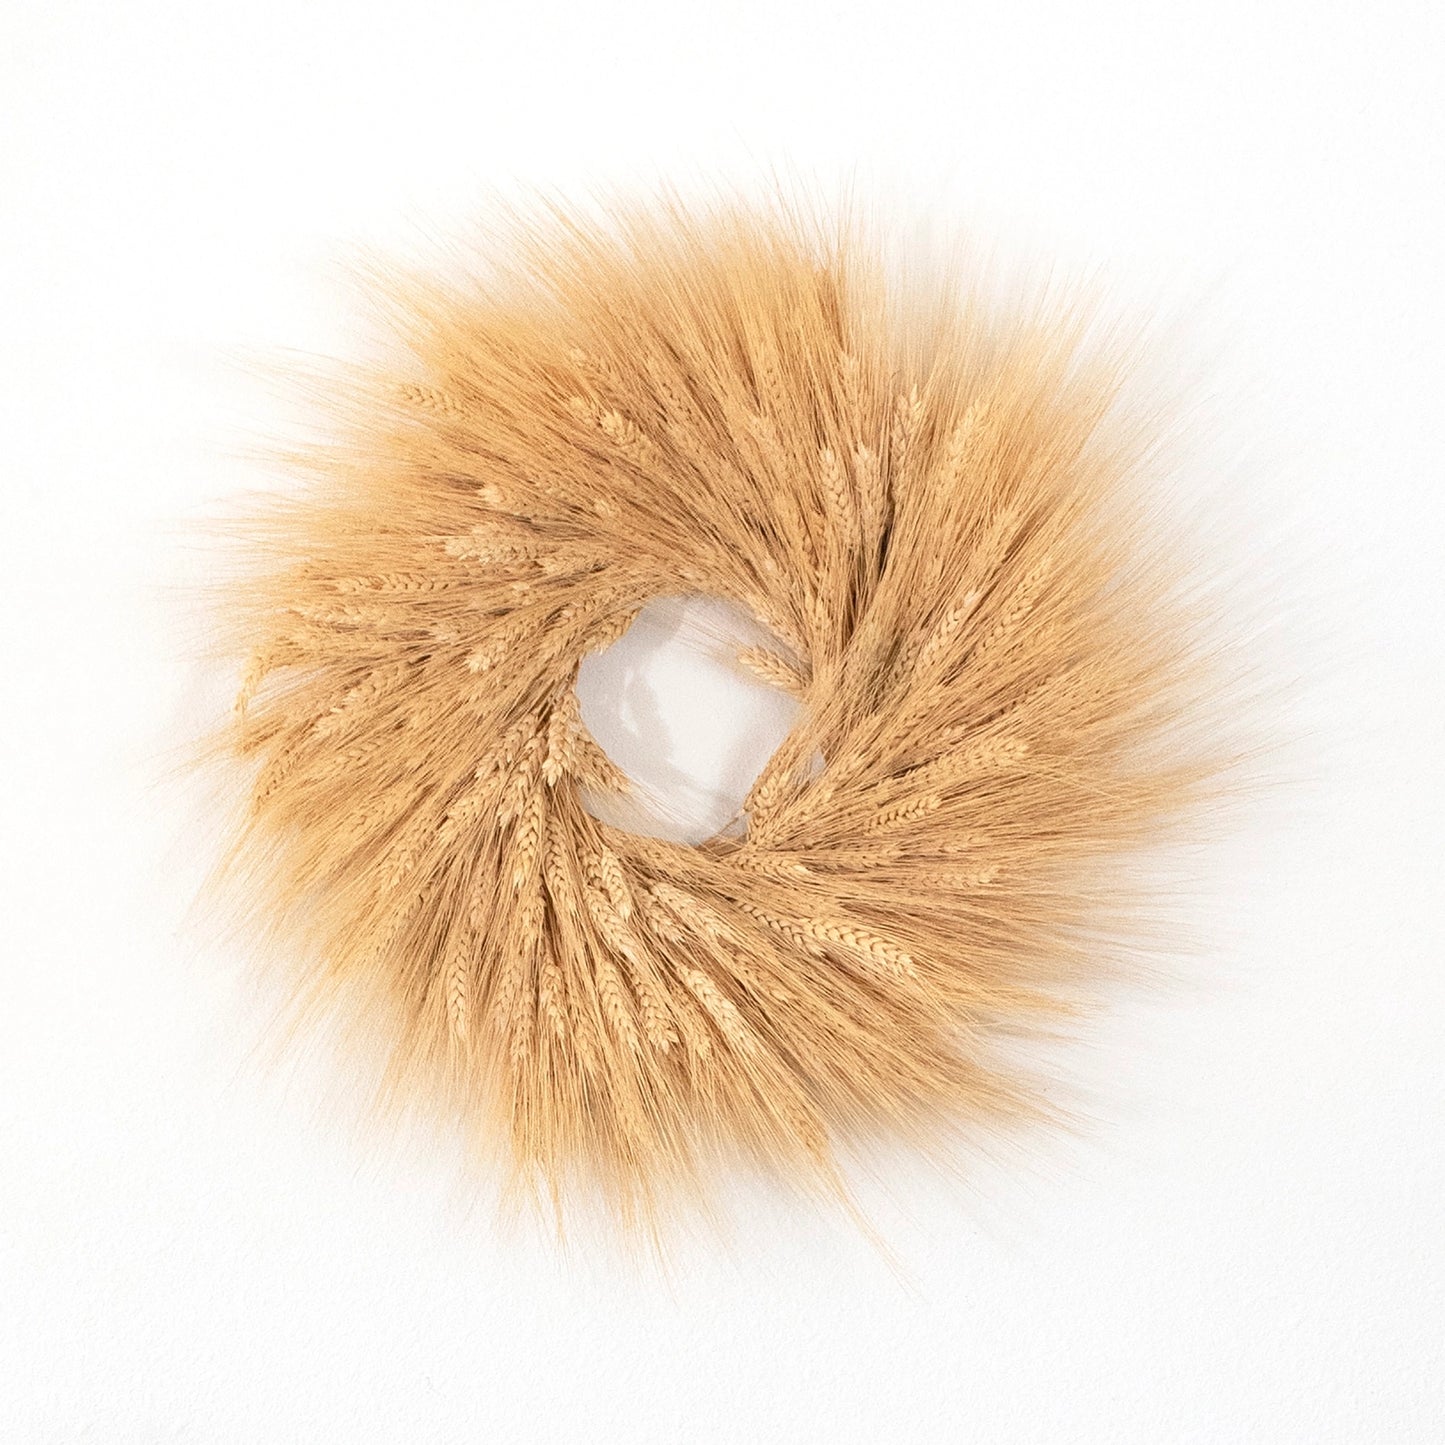 WREATH, 18" Dried Wheat Wreath